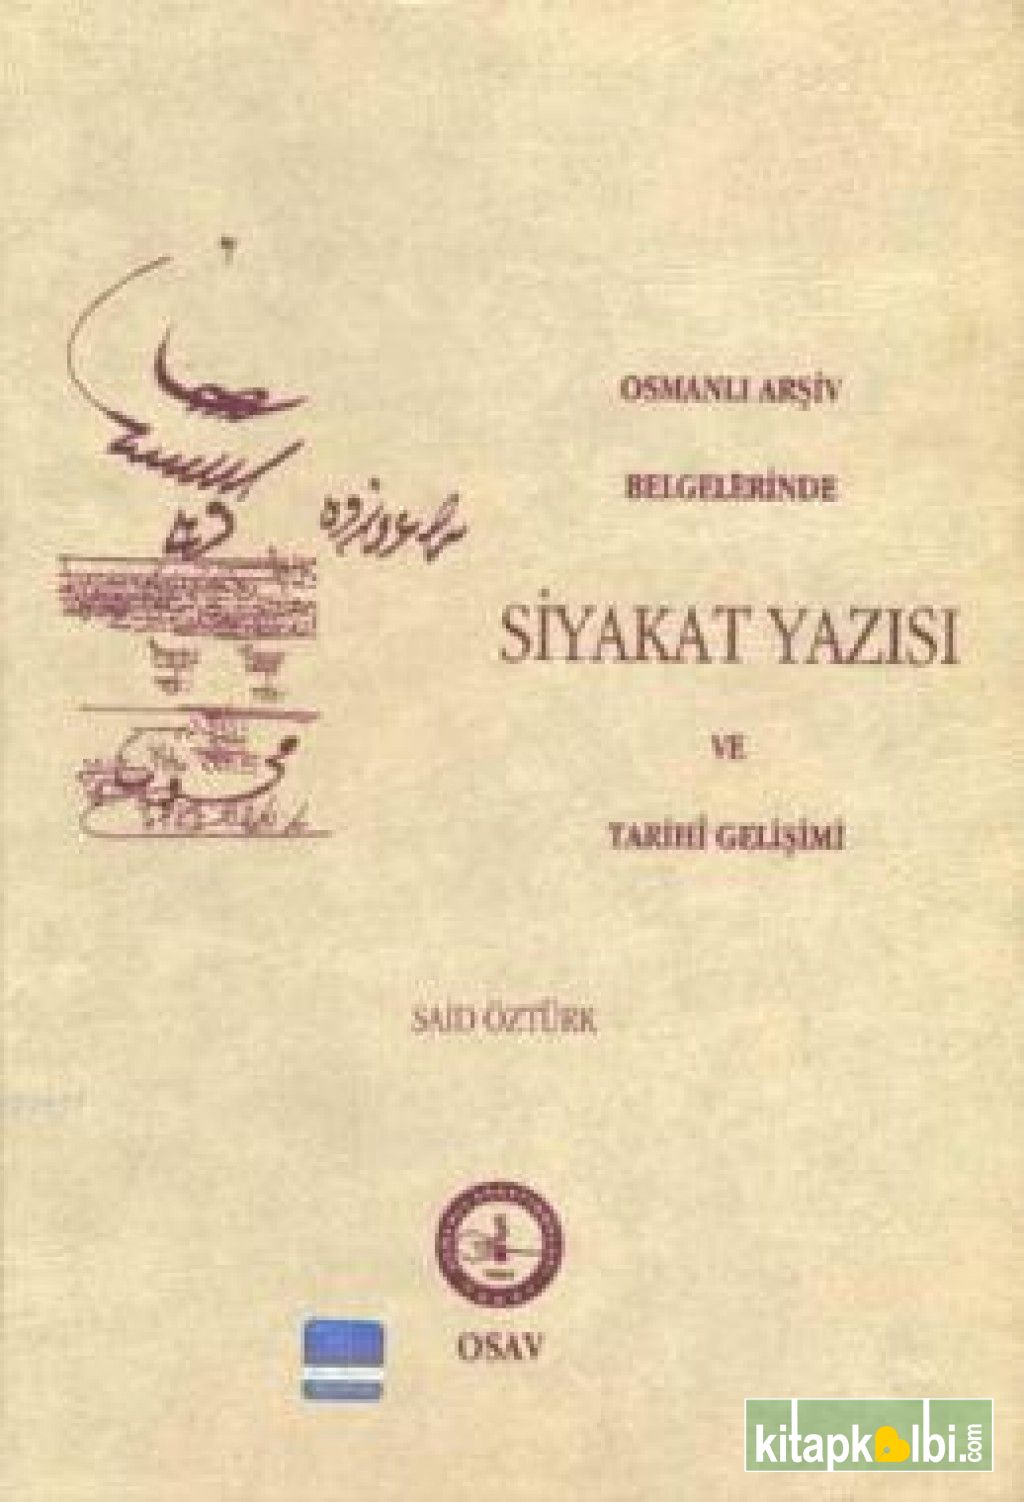 Osmanlı Arşiv Belgelerinde Siyakat Yazısı Ve Tarihi Gelişimi